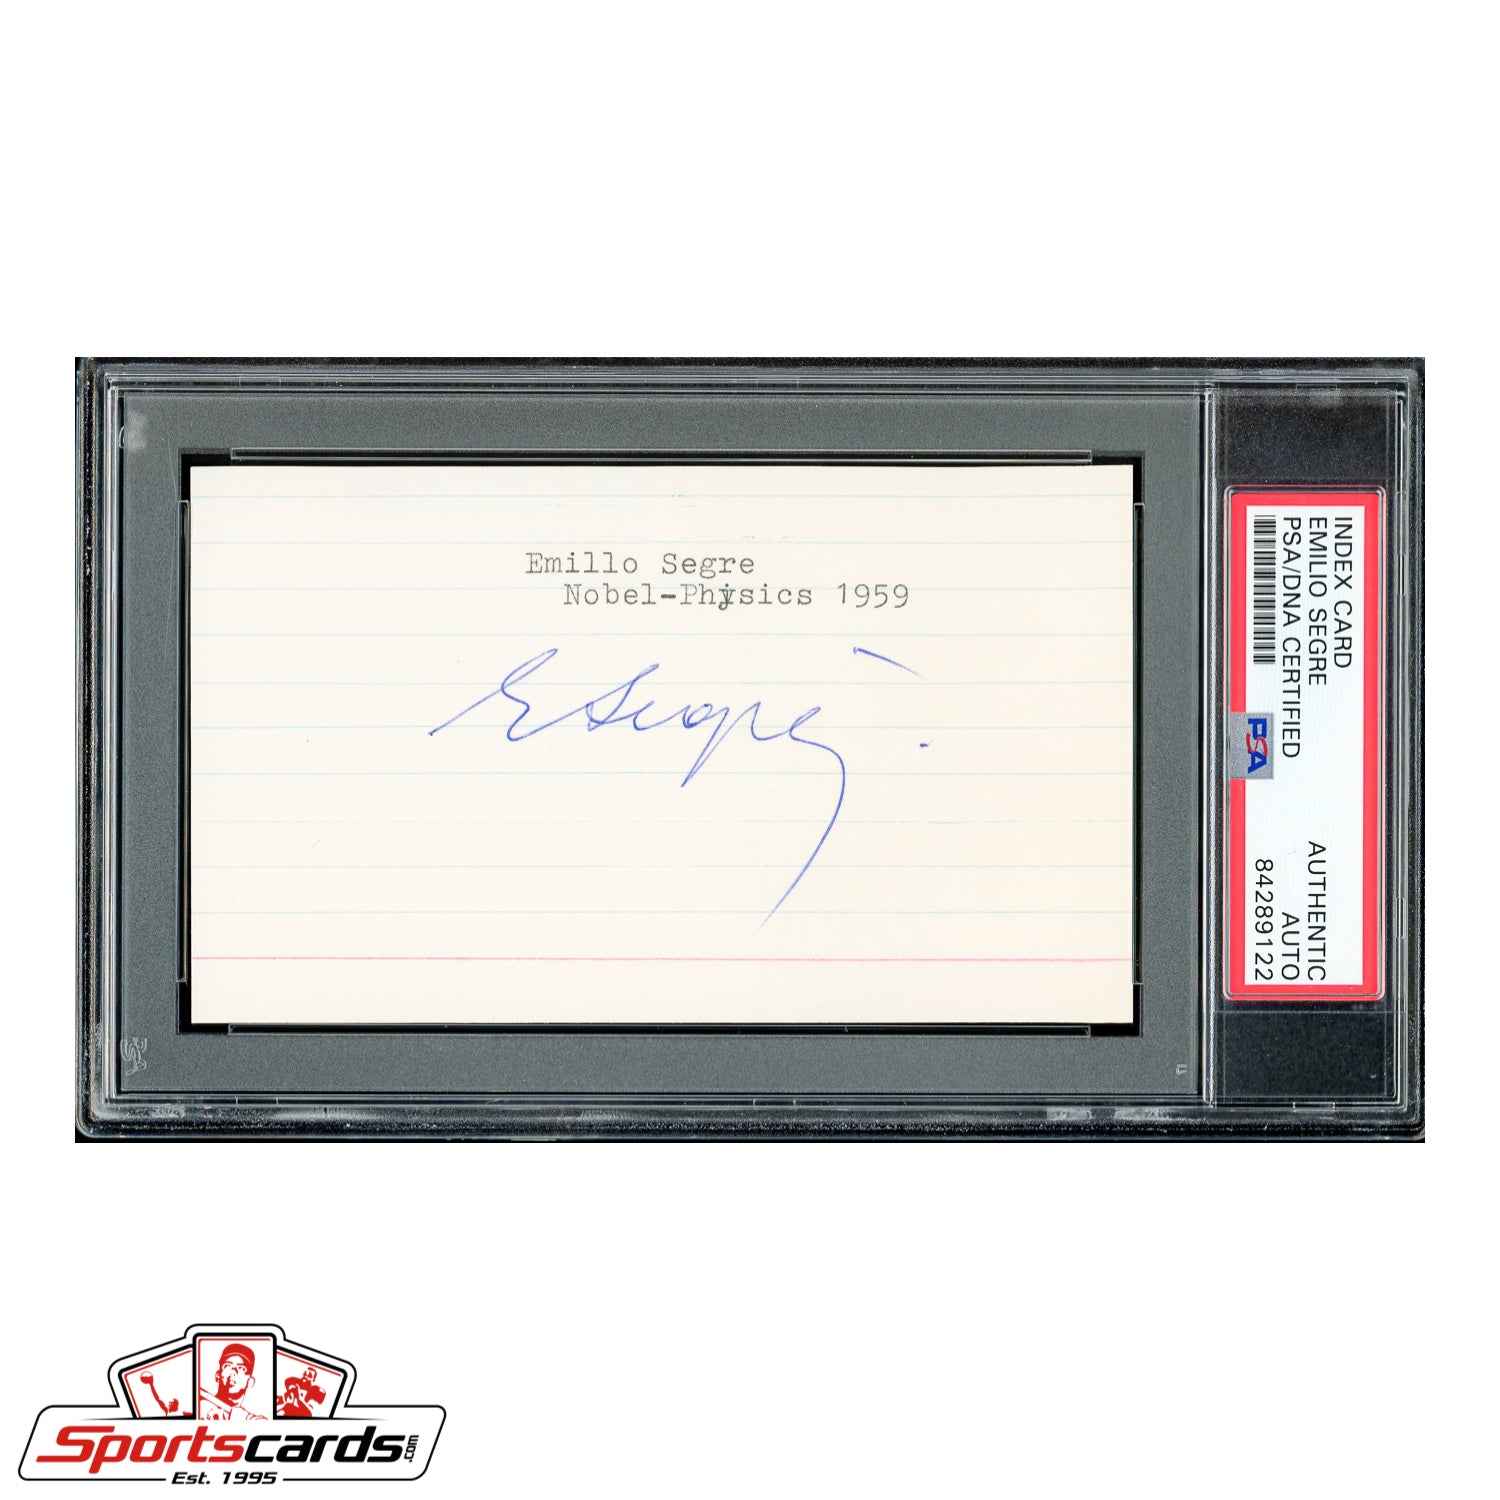 1959 Nobel Prize Winner Emilio Segre Signed Autographed 3x5 Index Card - PSA/DNA